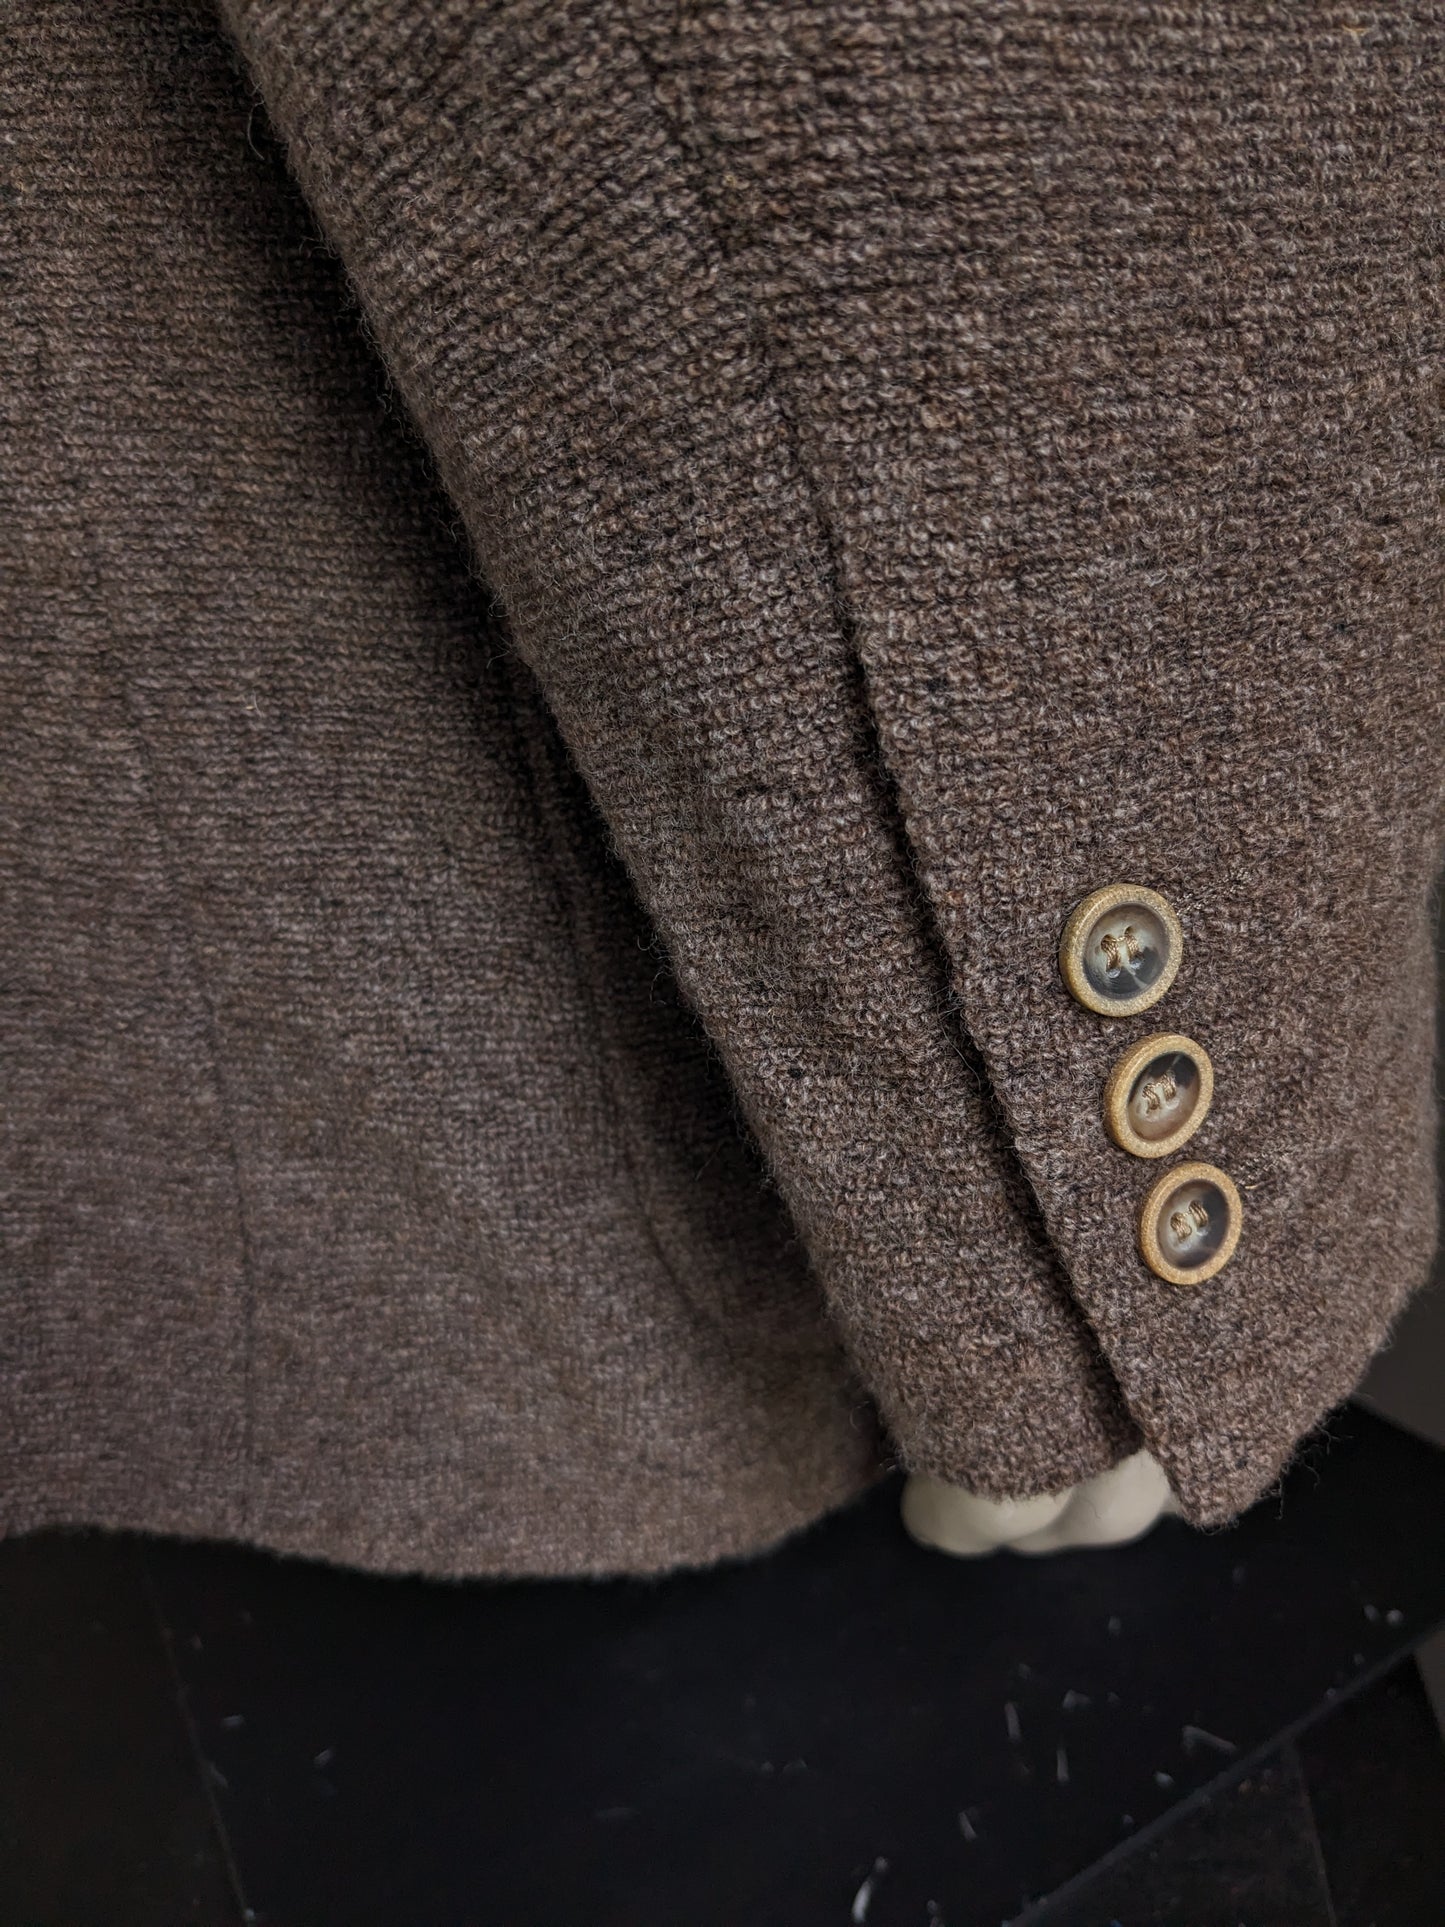 Veste en laine Matinique. Tissu de Terry mélangé marron. Taille 56 / XL. 64% de laine.